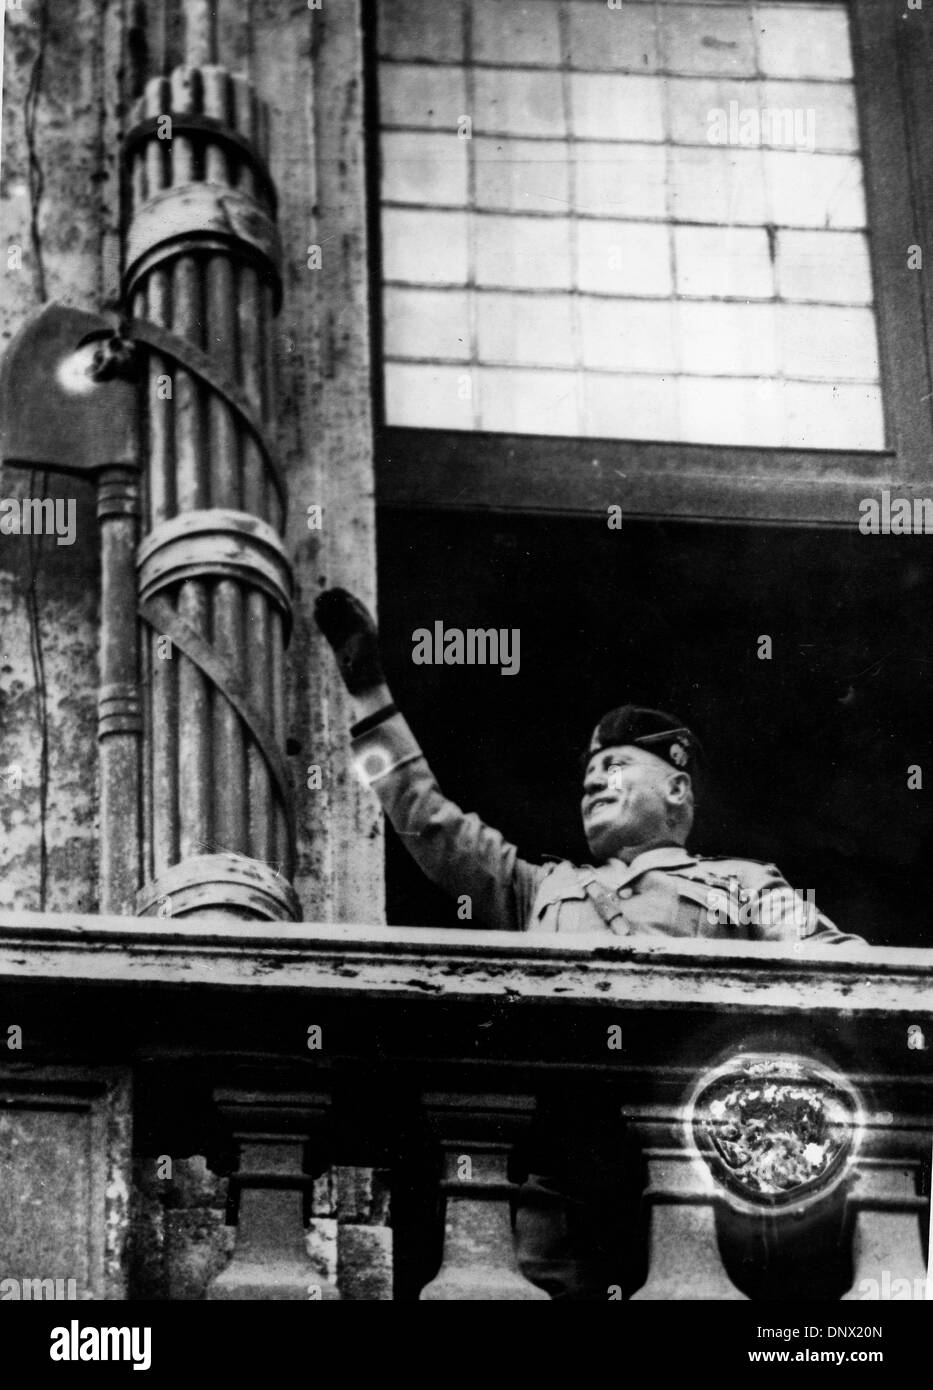 Marzo 25, 1938 - Roma, Italia - BENITO MUSSOLINI (1883-1945) il dittatore italiano e leader del movimento fascista sul balcone della Palazzio Venezia affrontare la folla. (Credito Immagine: © Keystone foto/ZUMAPRESS.com) Foto Stock